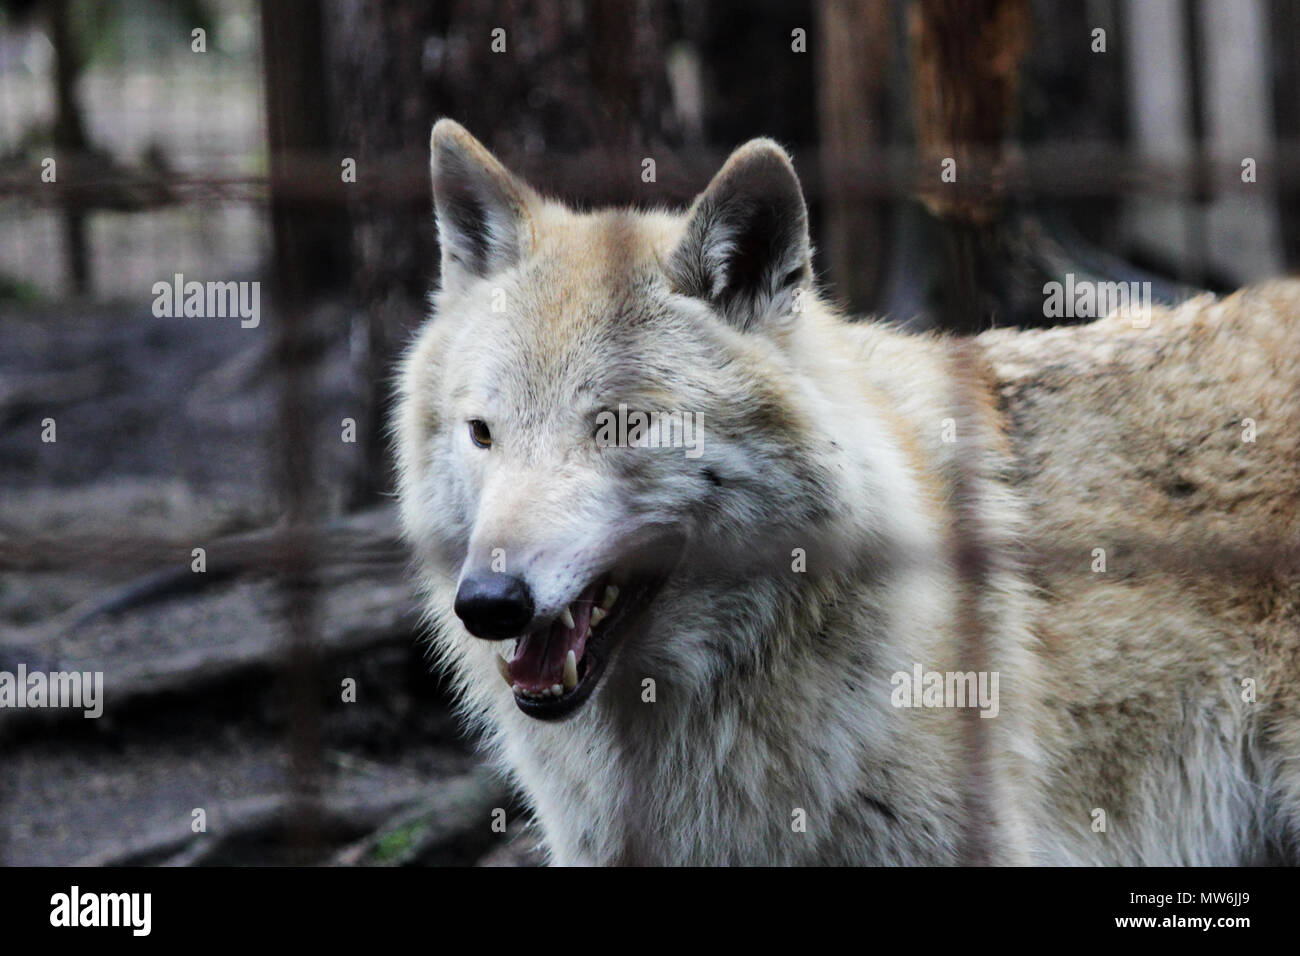 Le loup polaire derrière les barreaux, couleur d'été Canis lupus tundrarum. Chenil d'élevage de loups et de chiens-loups hybride. Loup dans une grande enceinte avec des bars. Banque D'Images